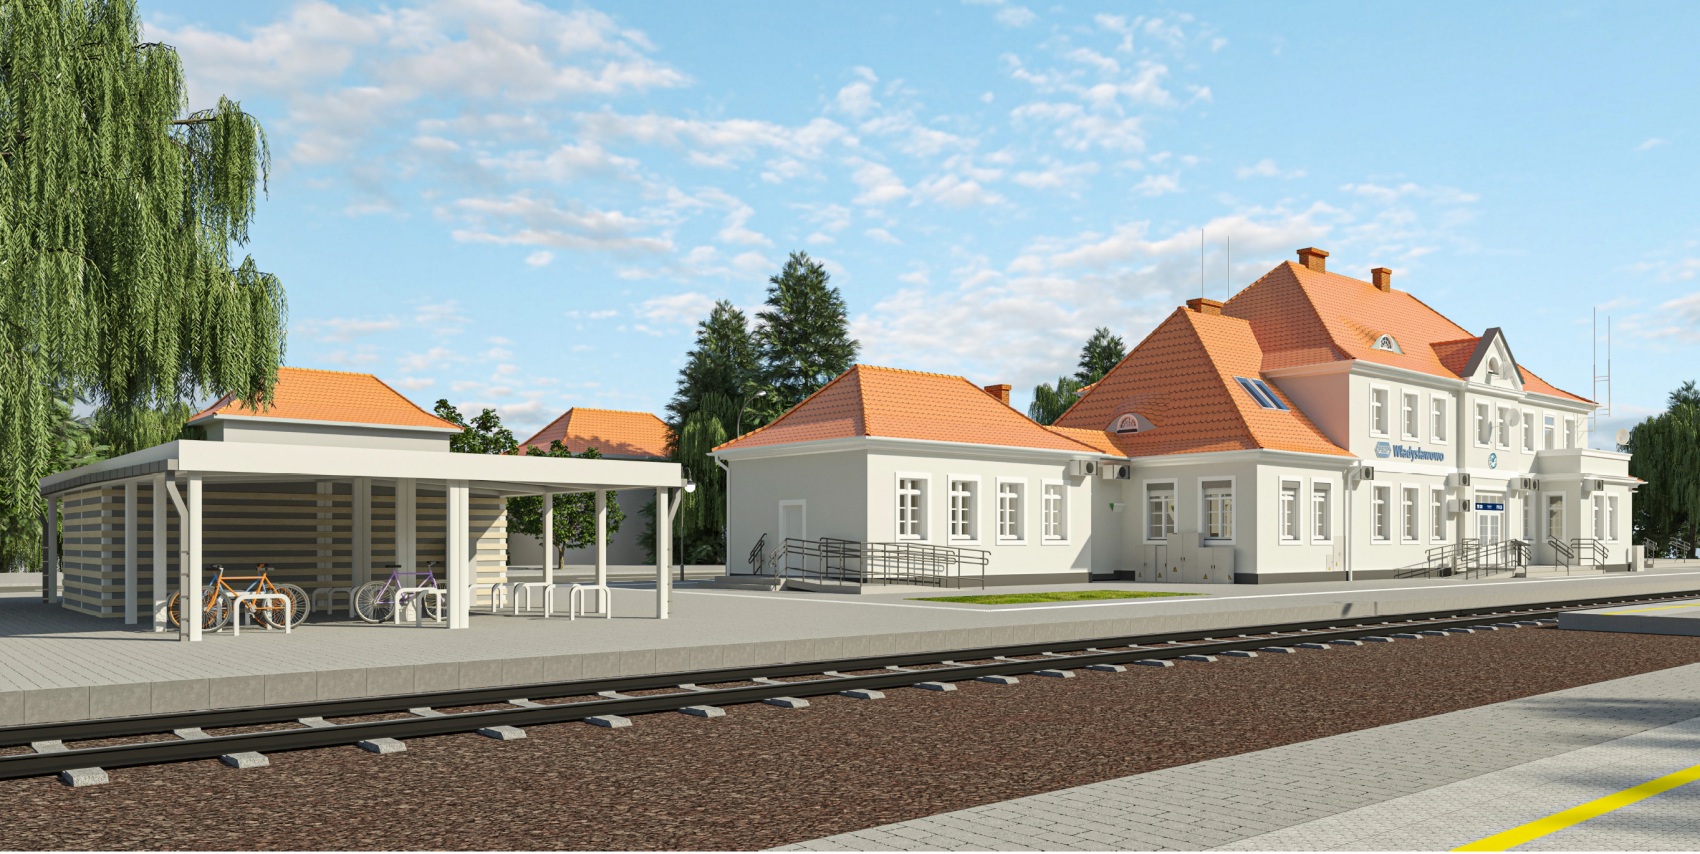 Dworzec we Władysławowie